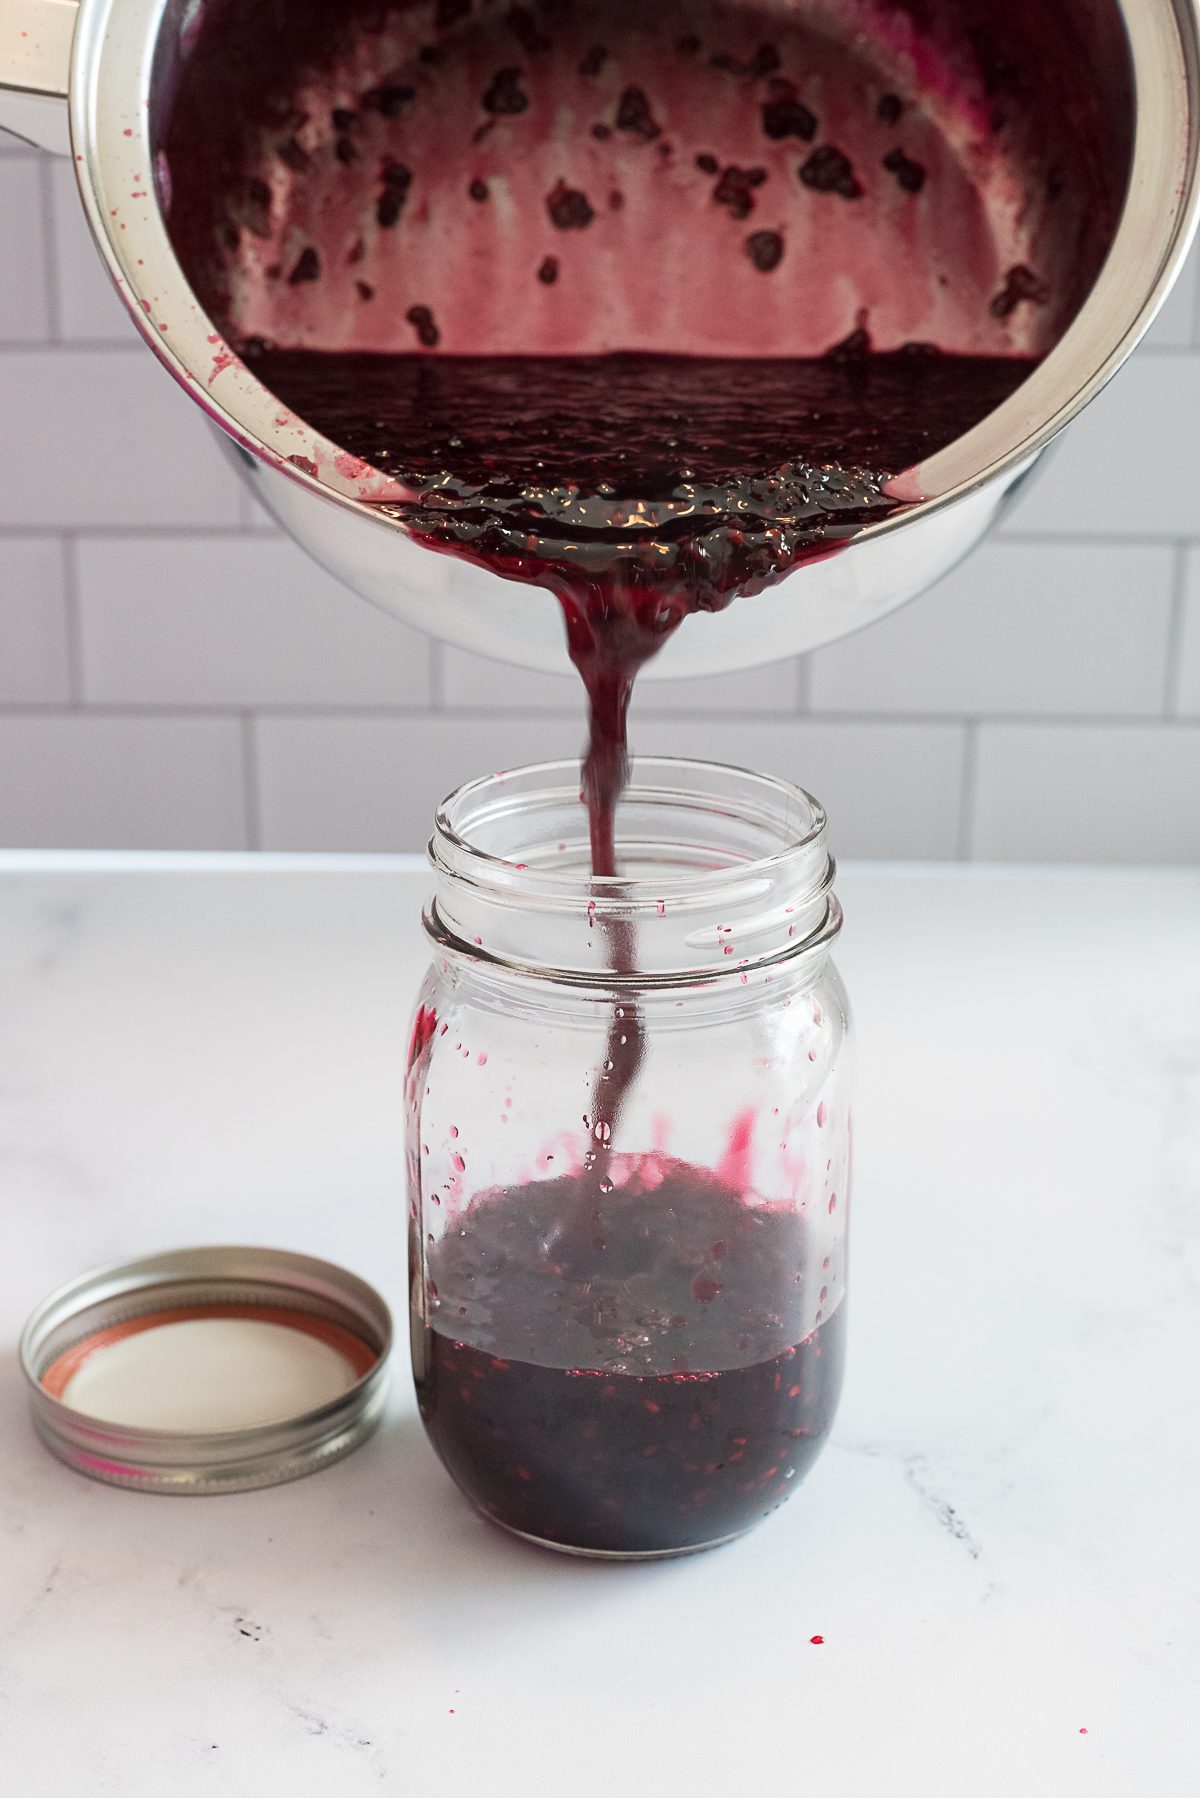 Jam made of Blackberries